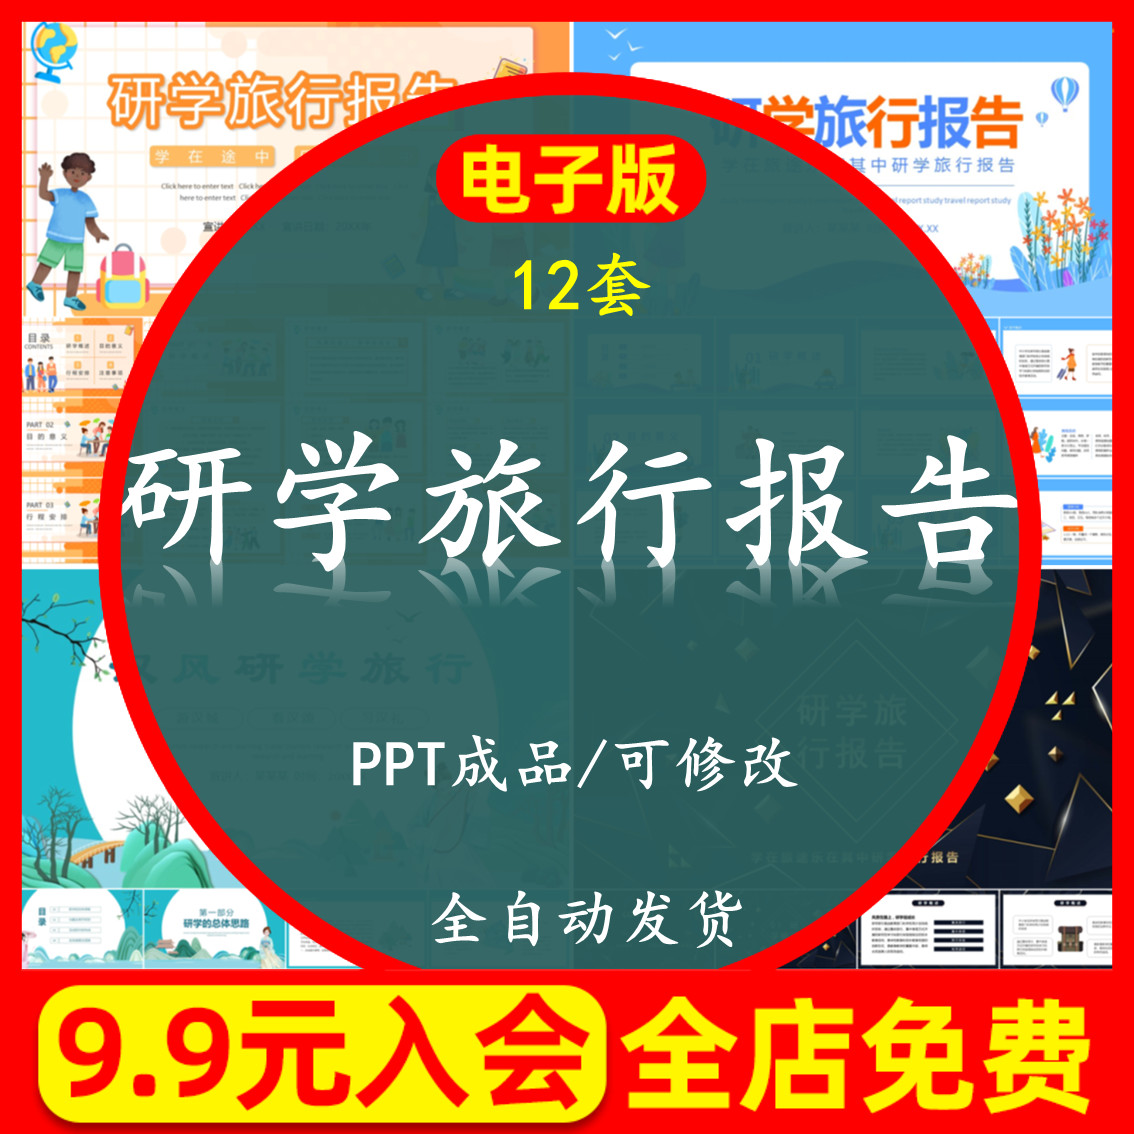 研学旅行报告PPT中小学模板汉风研学旅行户外项目行程安排素材